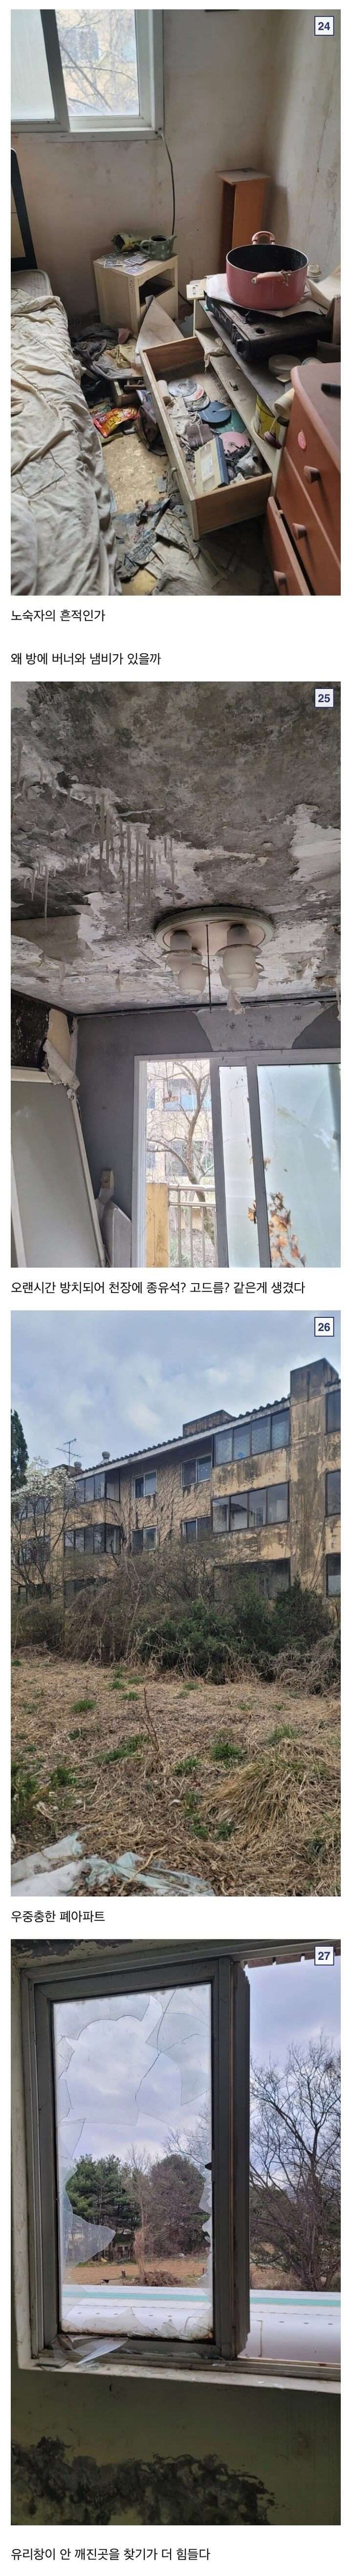 버려진 폐 아파트의 남겨진 흔적들